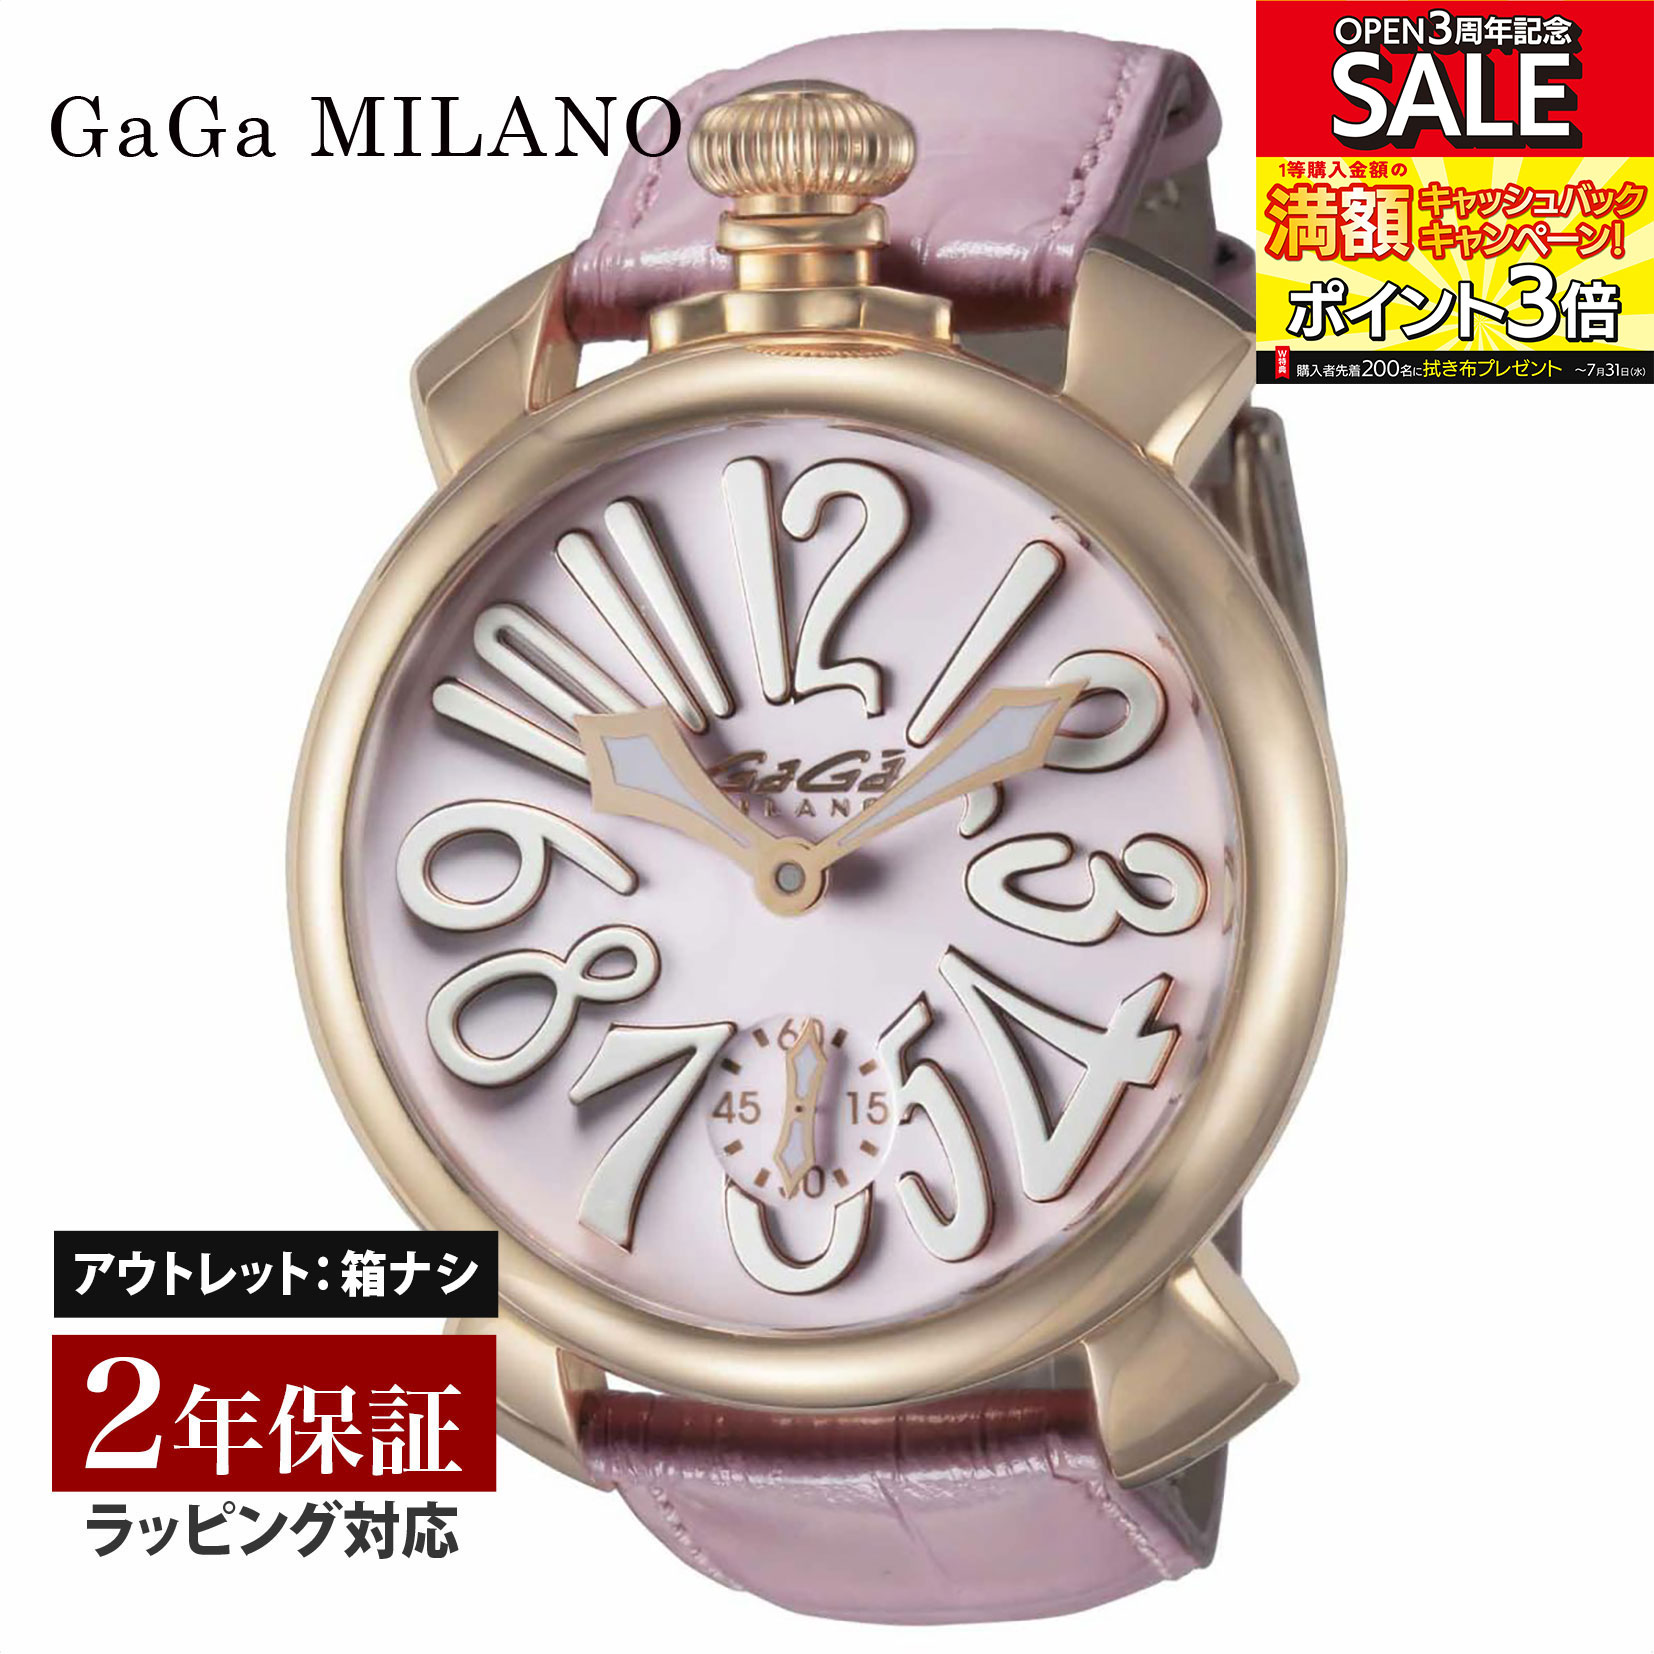 ガガ ミラノ 腕時計（メンズ） 【OUTLET】 ガガミラノ GaGaMILANO メンズ レディース 時計 MANUALE 48mm 手巻 ユニセックス ピンク 5011.02S-PNK-NEW 時計 腕時計 高級腕時計 ブランド 【展示品】